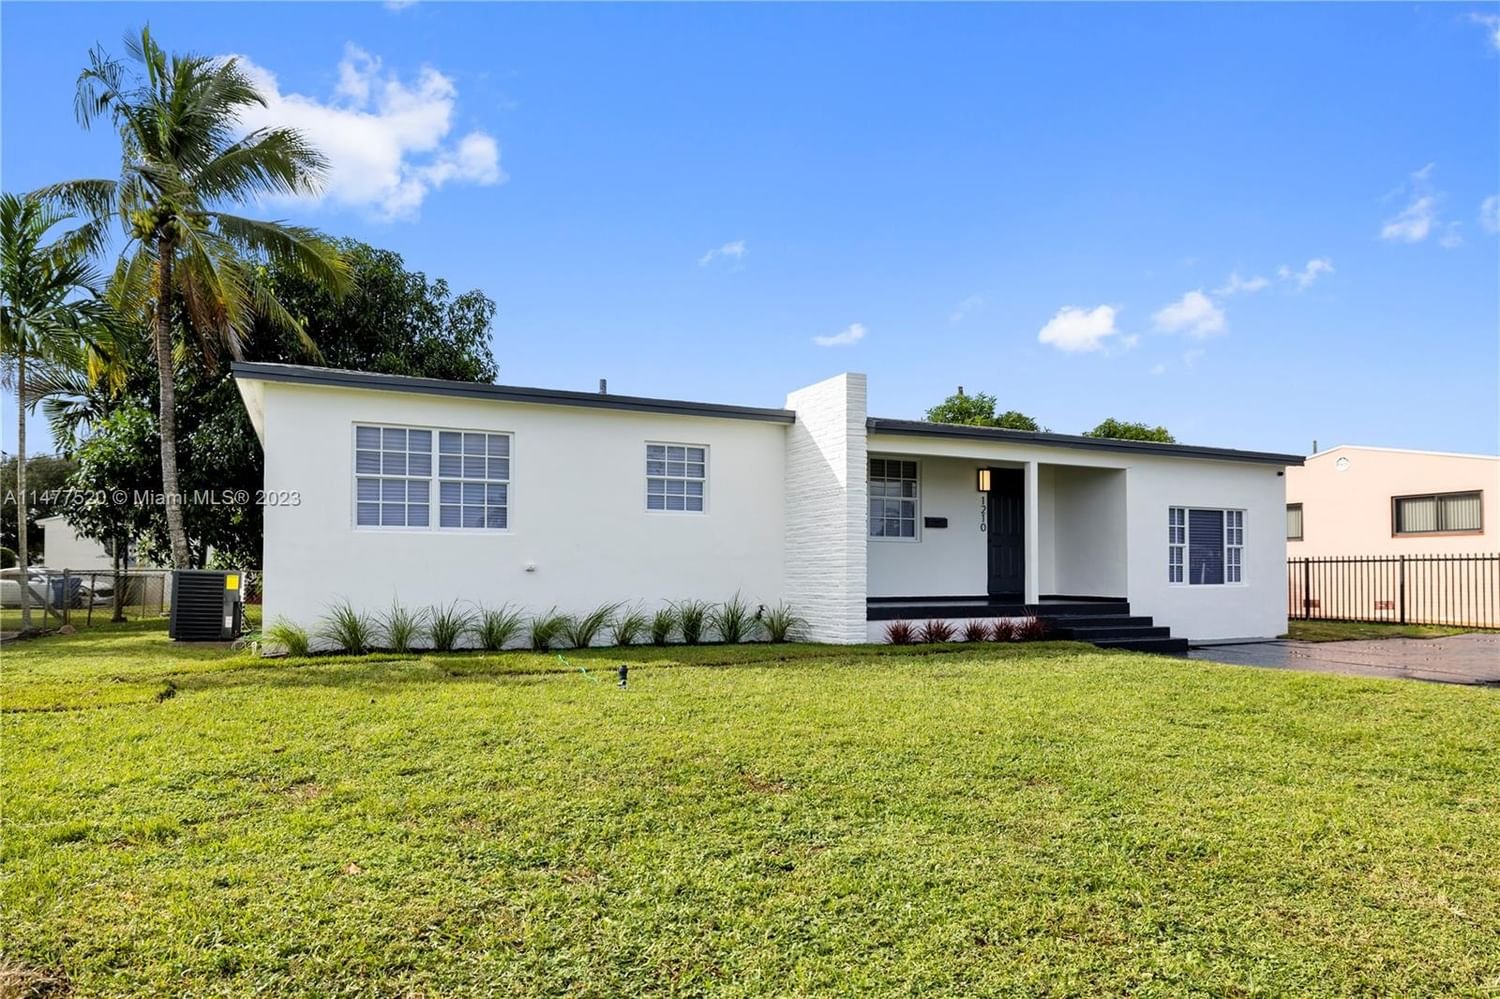 Real estate property located at 1210 91st St, Miami-Dade County, CRAVERO LAKE SHORE ESTATE, Miami, FL